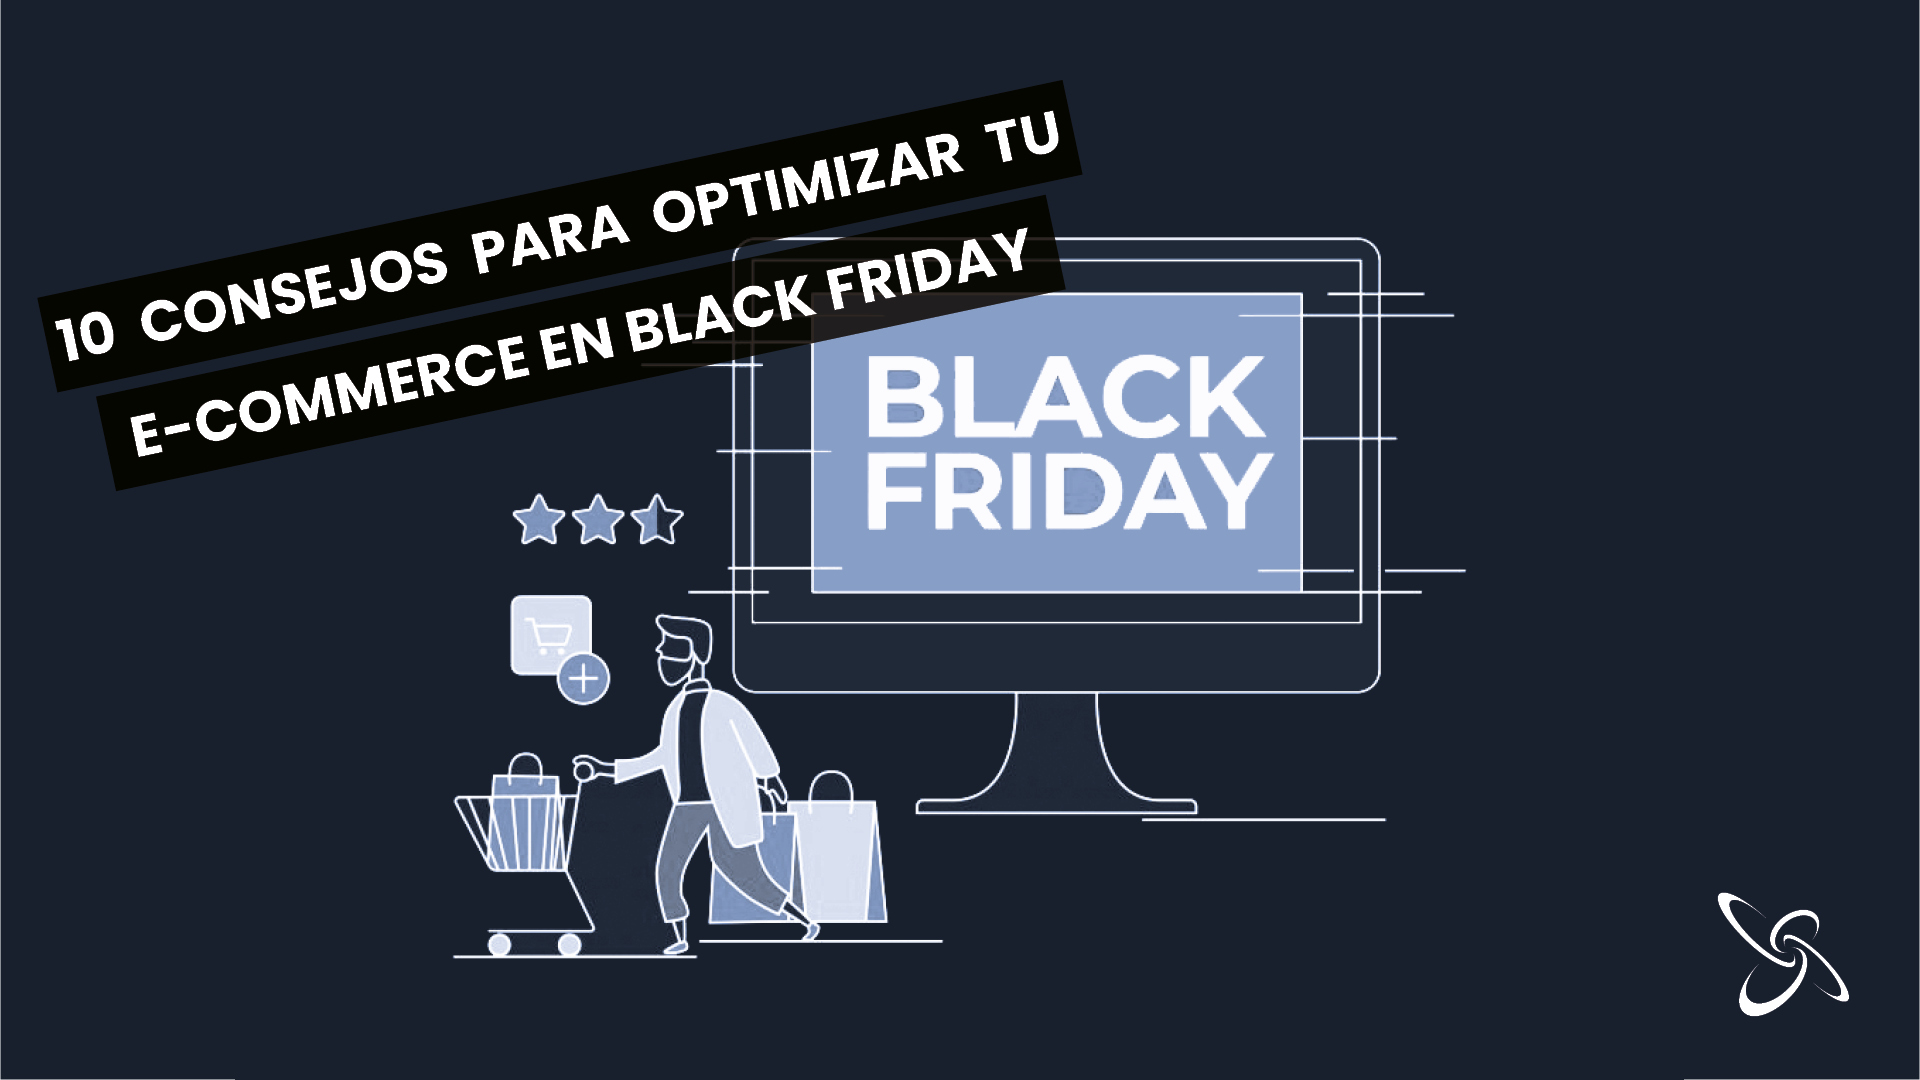 Blog optimizar e-commerce para black friday